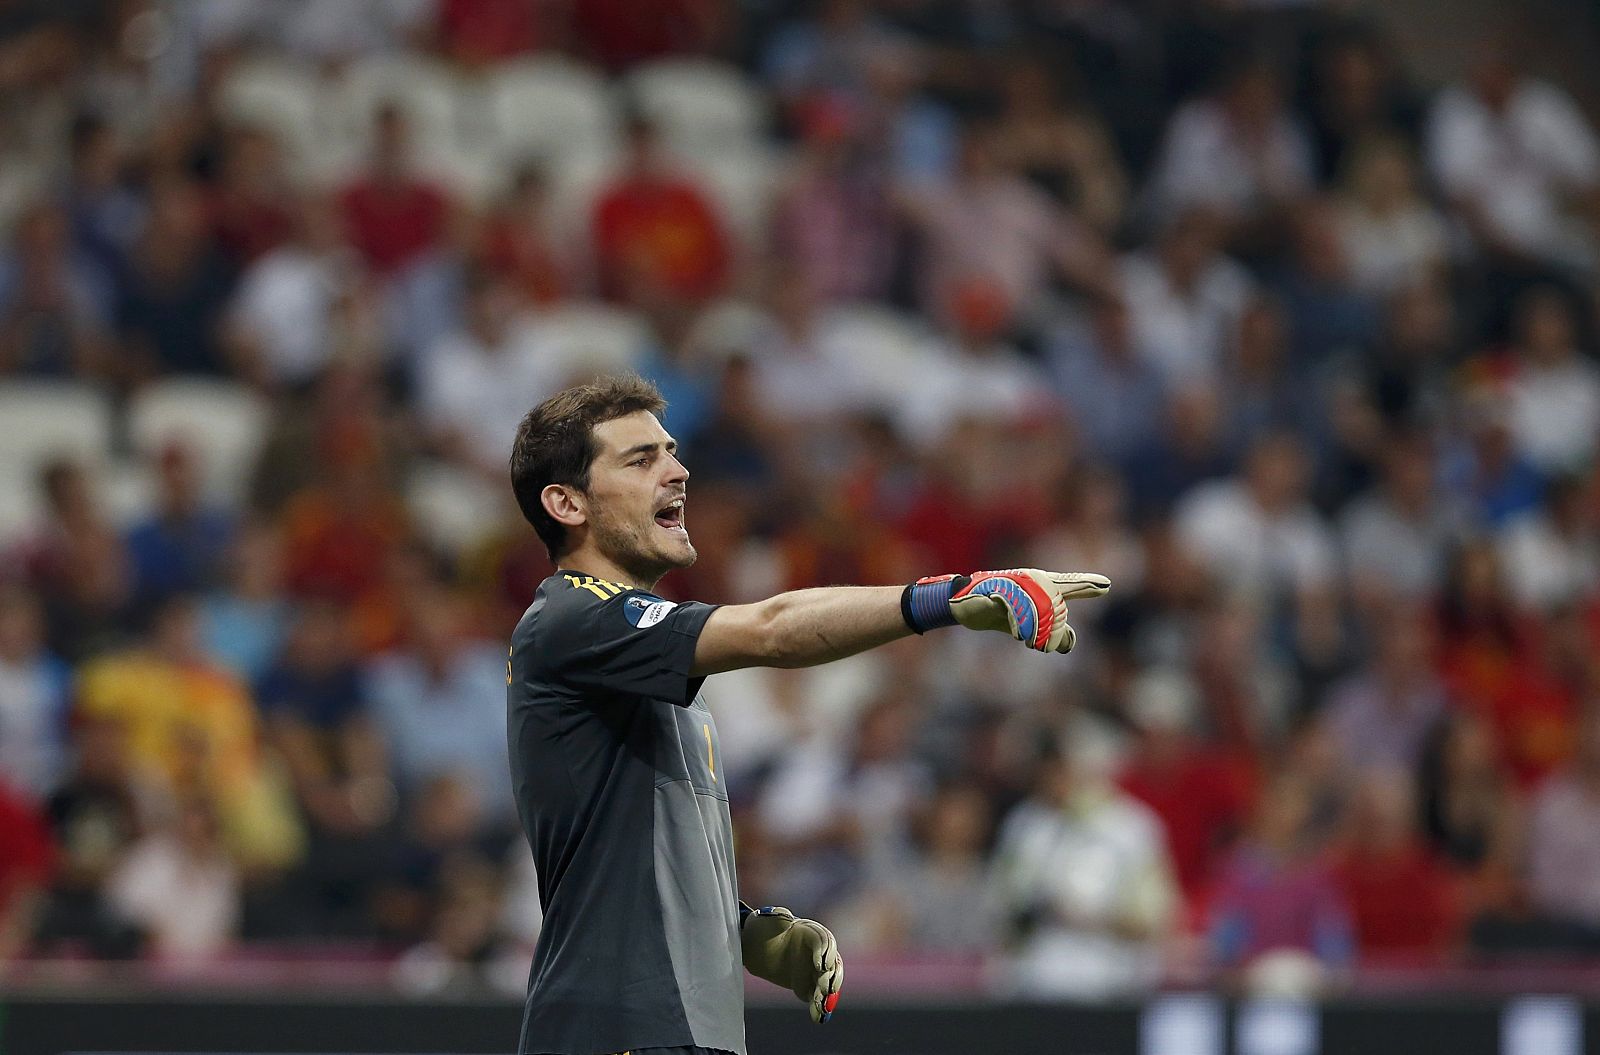 El capitán de la selección española Iker Casillas da órdenes a sus defensas durante un encuentro de la Eurocopa 2012.